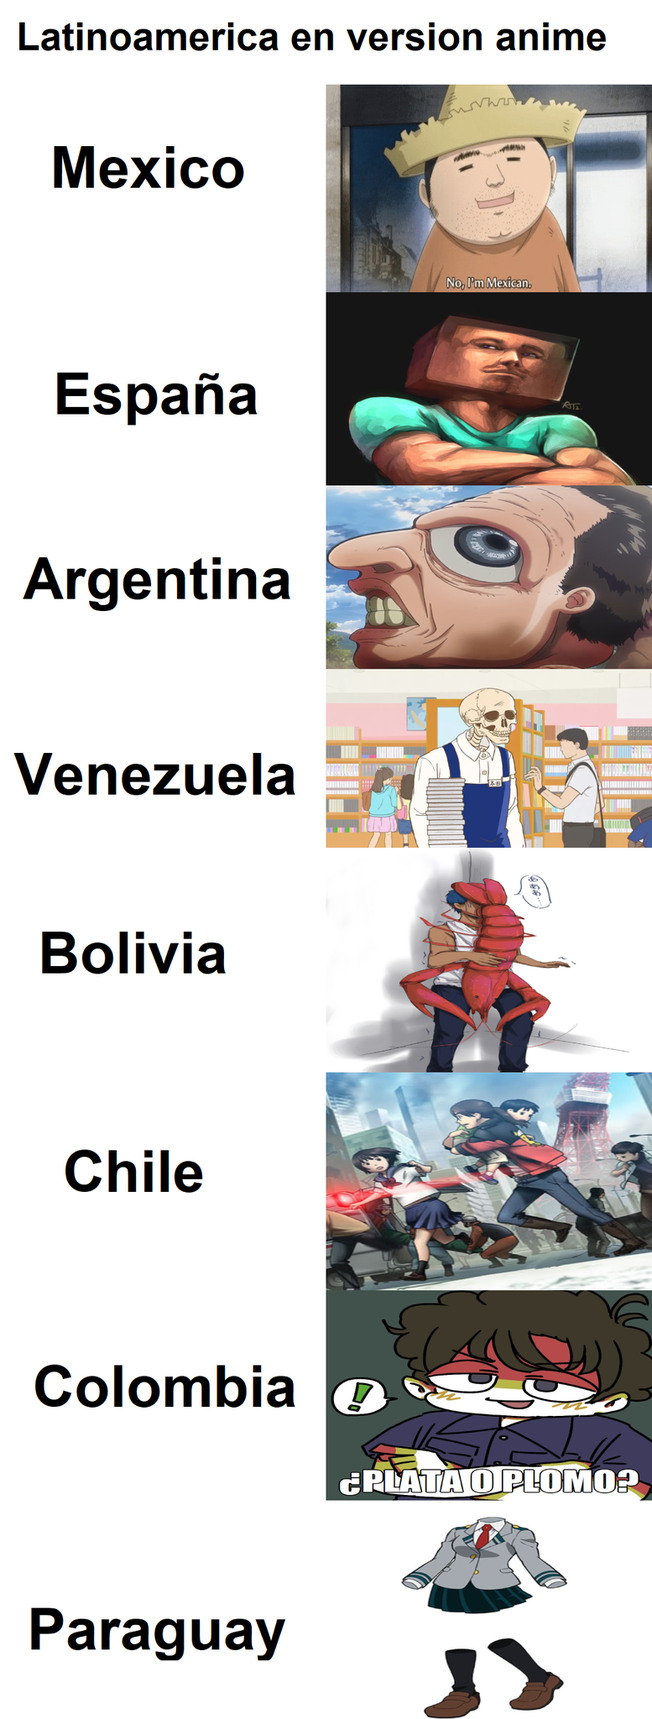 Latinoamericano en versión anime - meme